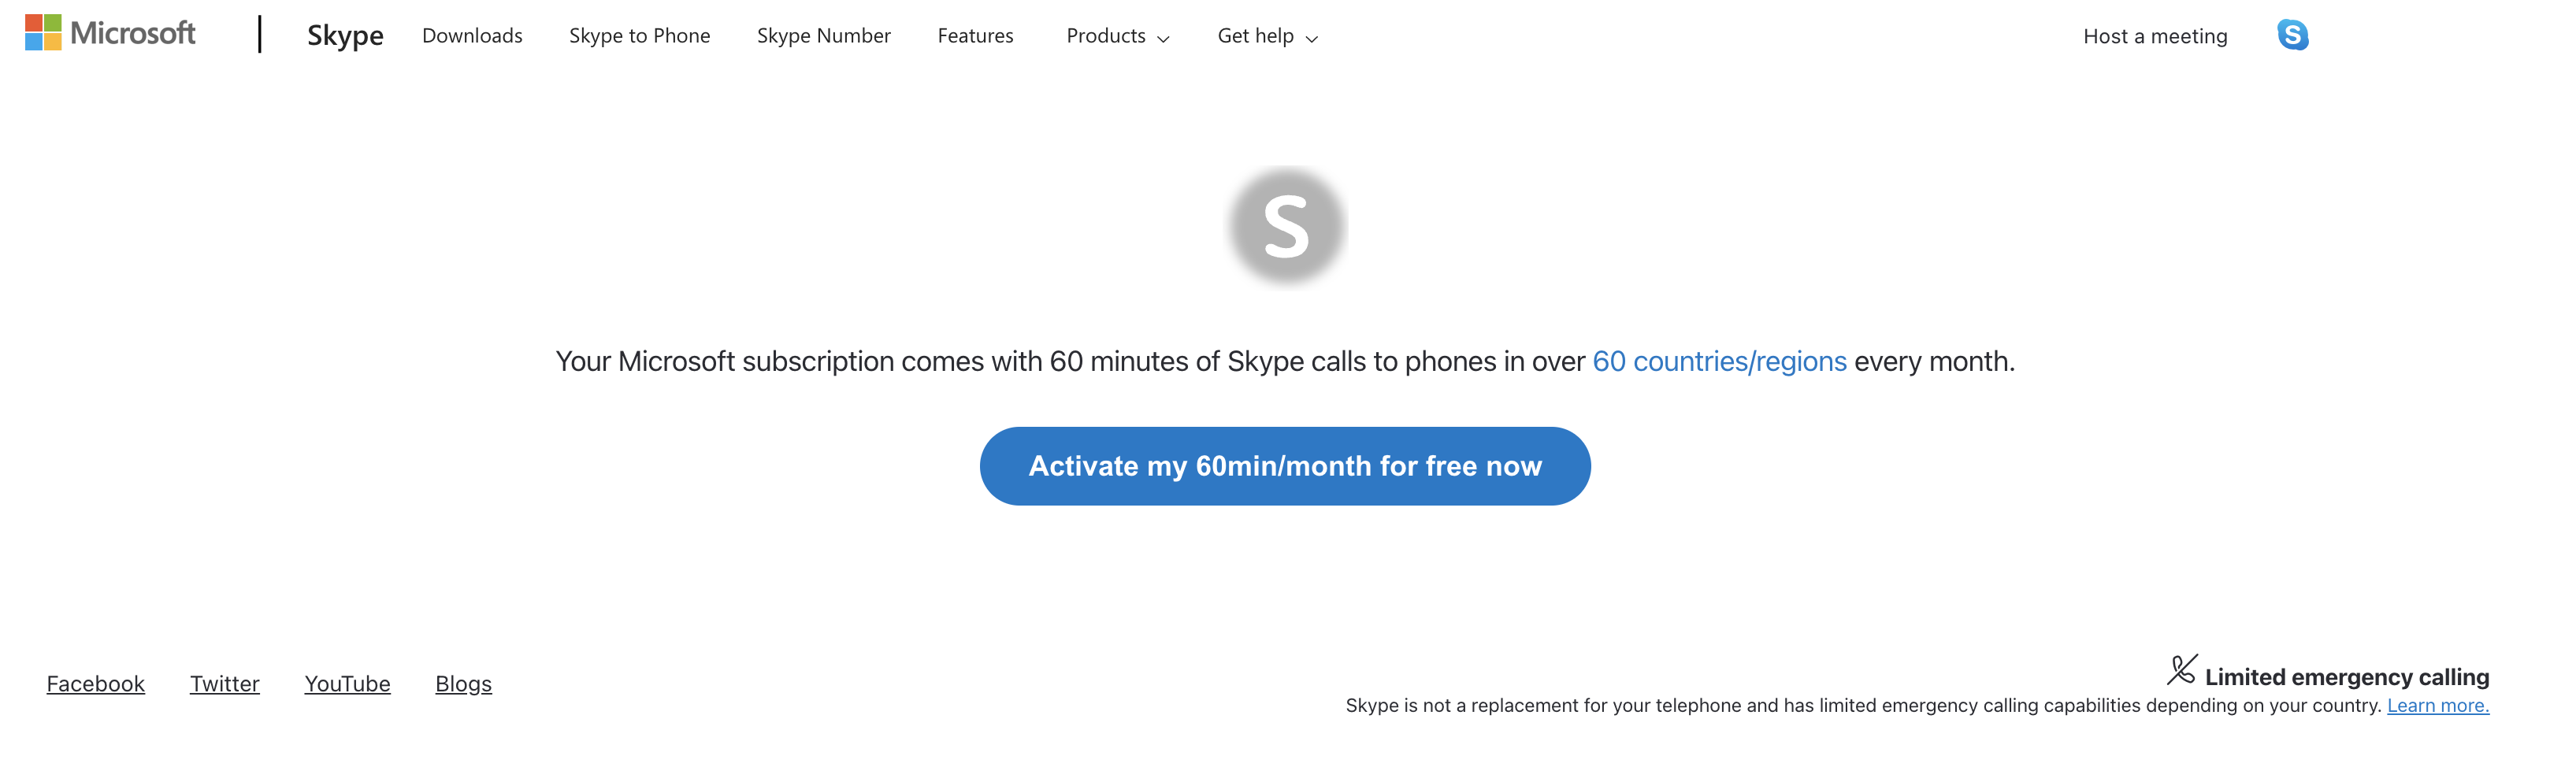 Веб-сторінка для активації безкоштовних 60 хвилин за допомогою Skype